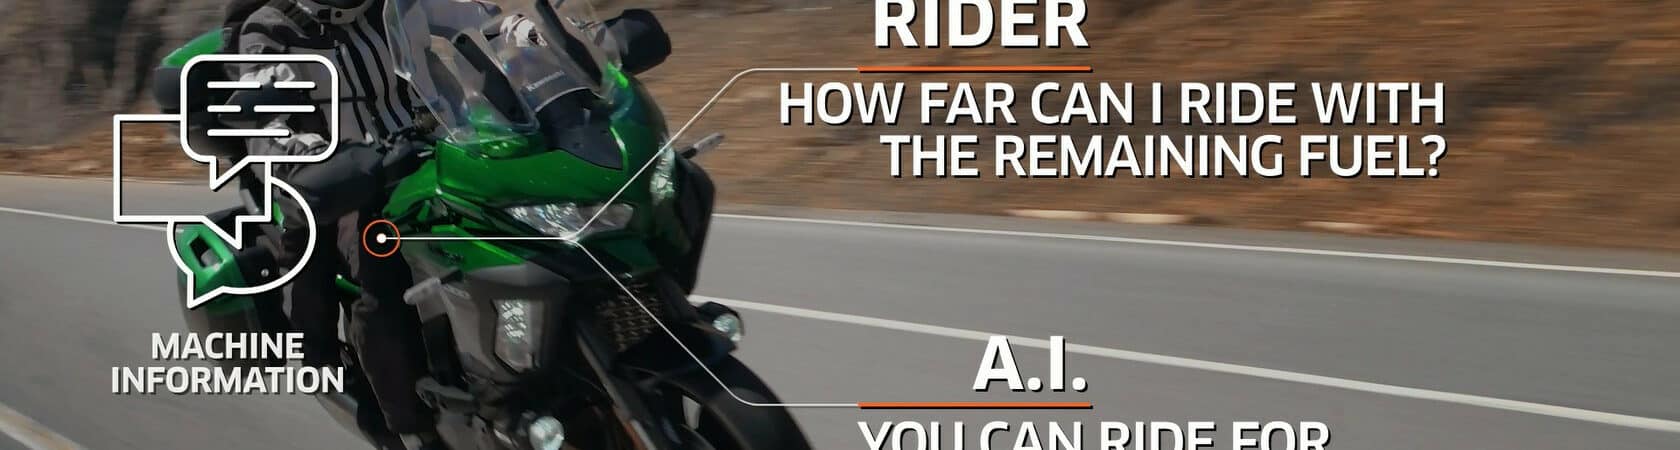 AAssistente virtual para motos poderá dar informações sobre o trânsito ou a autonomia com o combustível restante